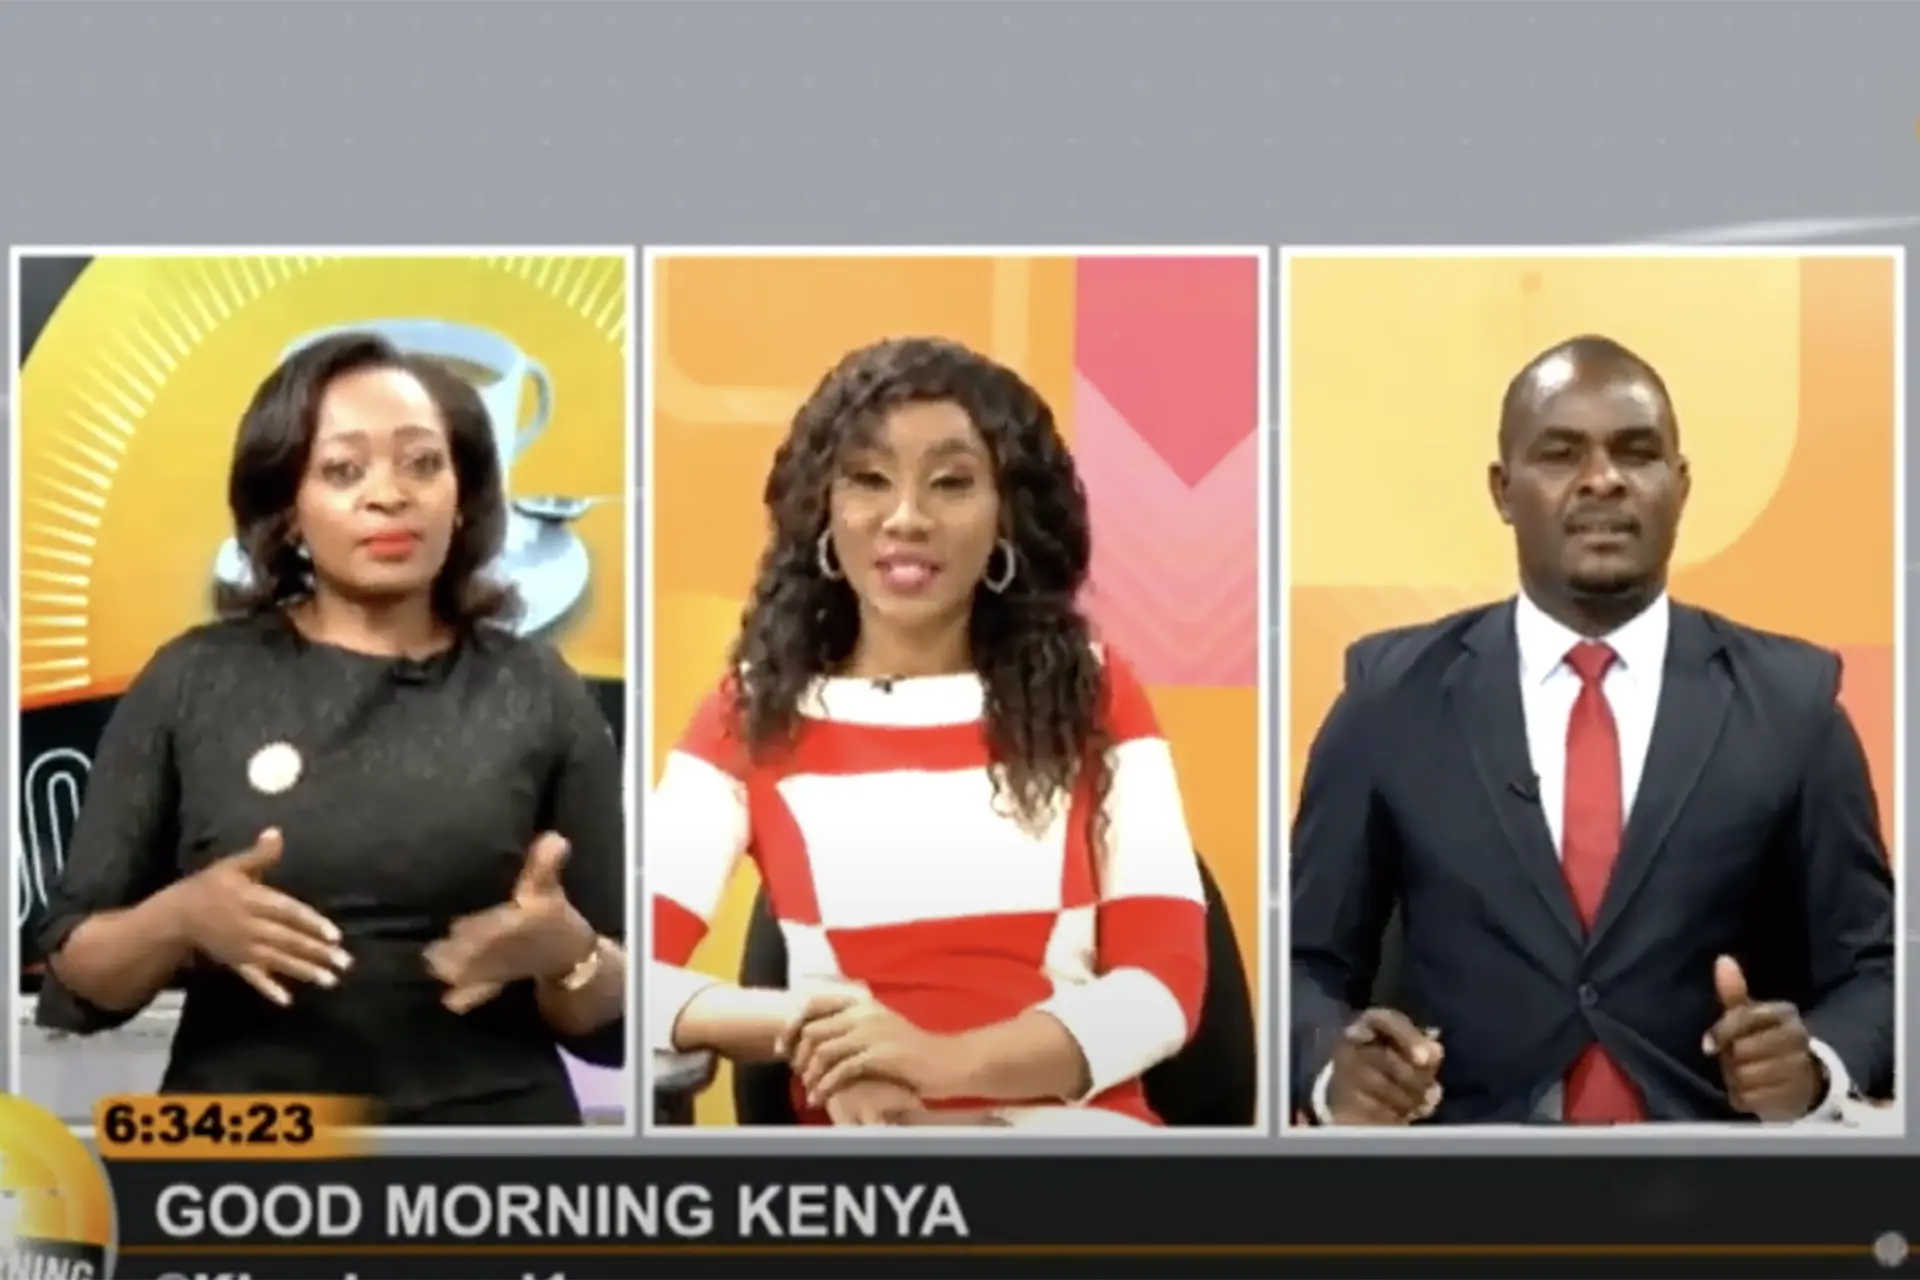 Pablo Nemo: Walking Africa "Good Morning Kenya" Tv show